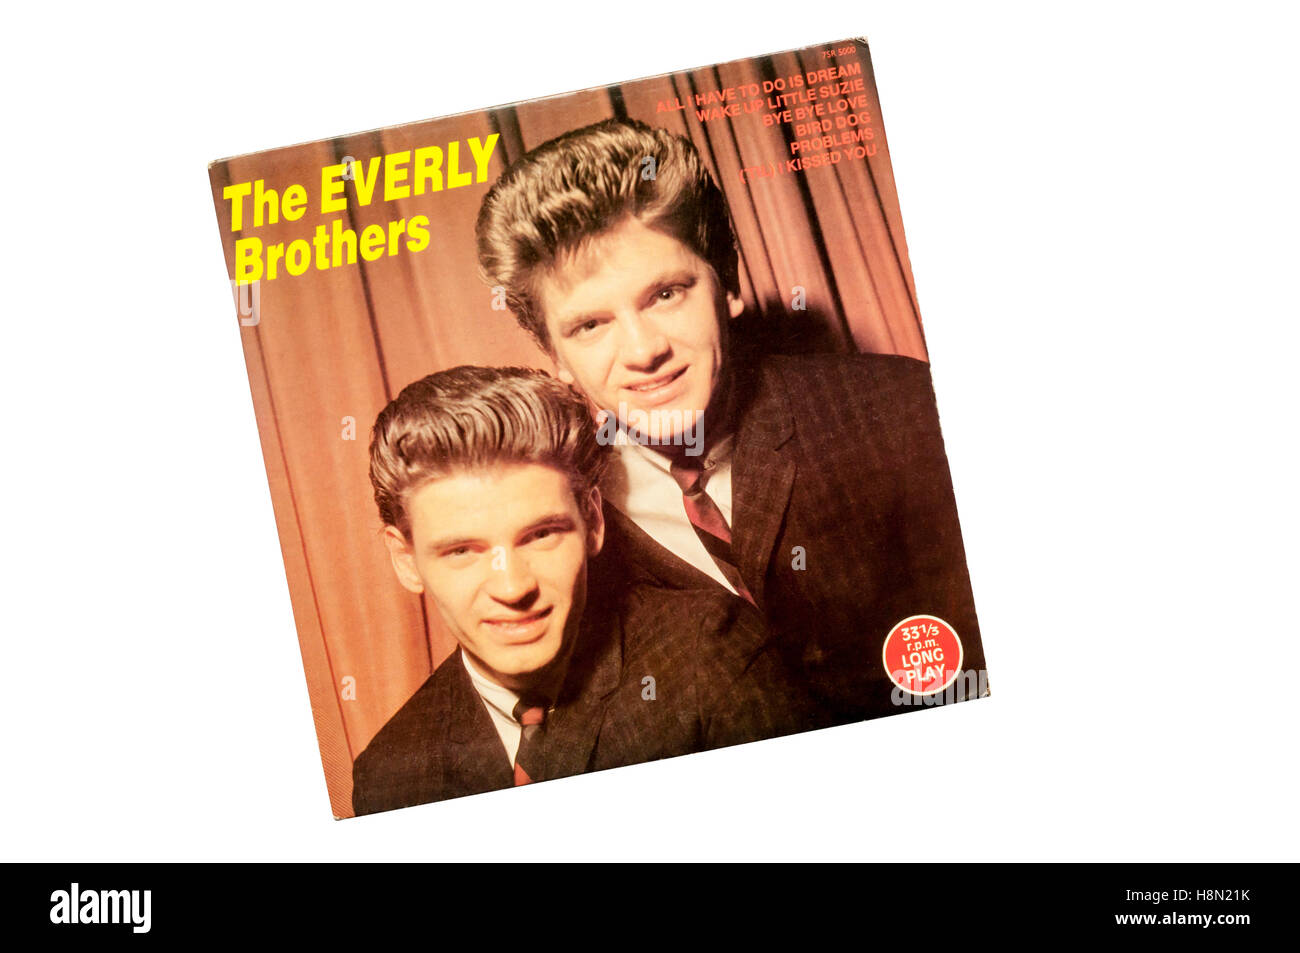 Un 7' LP compilation album de The Everly Brothers publié en 1983 sur l'écope 33 label. Banque D'Images